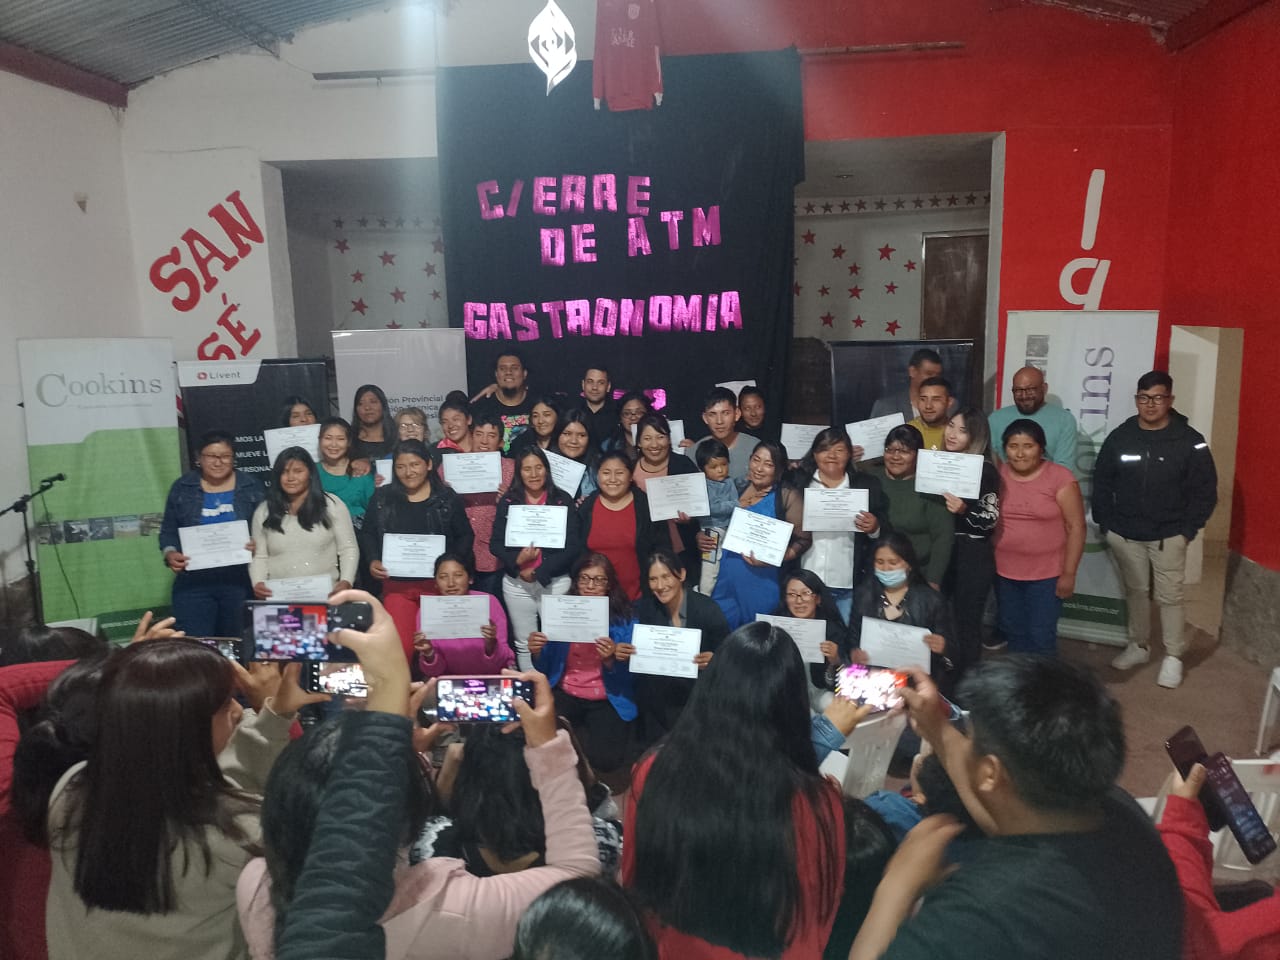 Estudiantes de Antofagasta de la Sierra recibieron certificados del Curso de Gastronomía dictado por el Aula Taller Móvil